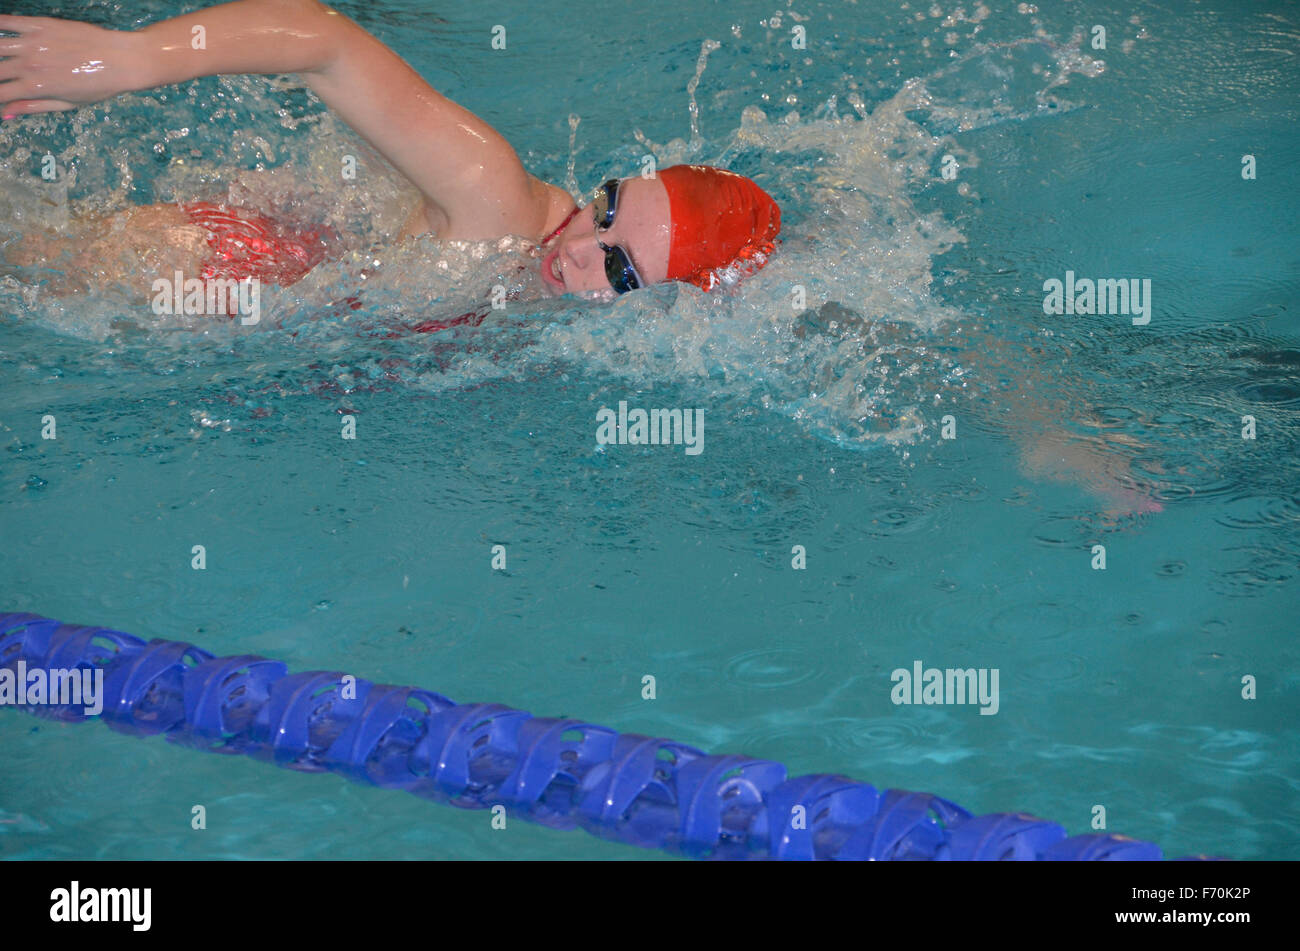 Nuotatore in una nuotata soddisfare Foto Stock